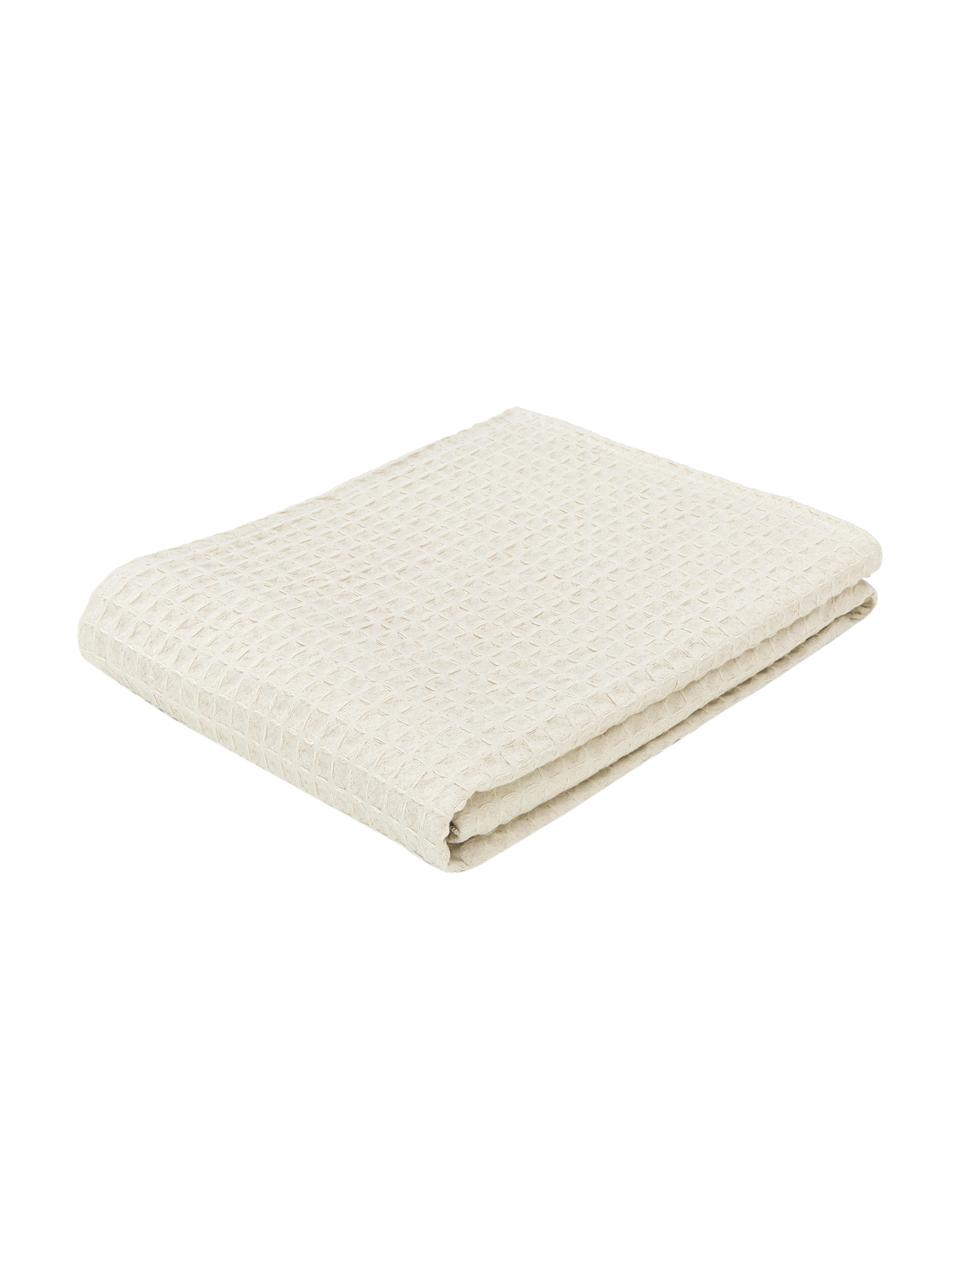 Colcha con estructura gofre Panal, 100% algodón, Crema, An 240 x L 260 cm (para camas de 200 x 200 cm)